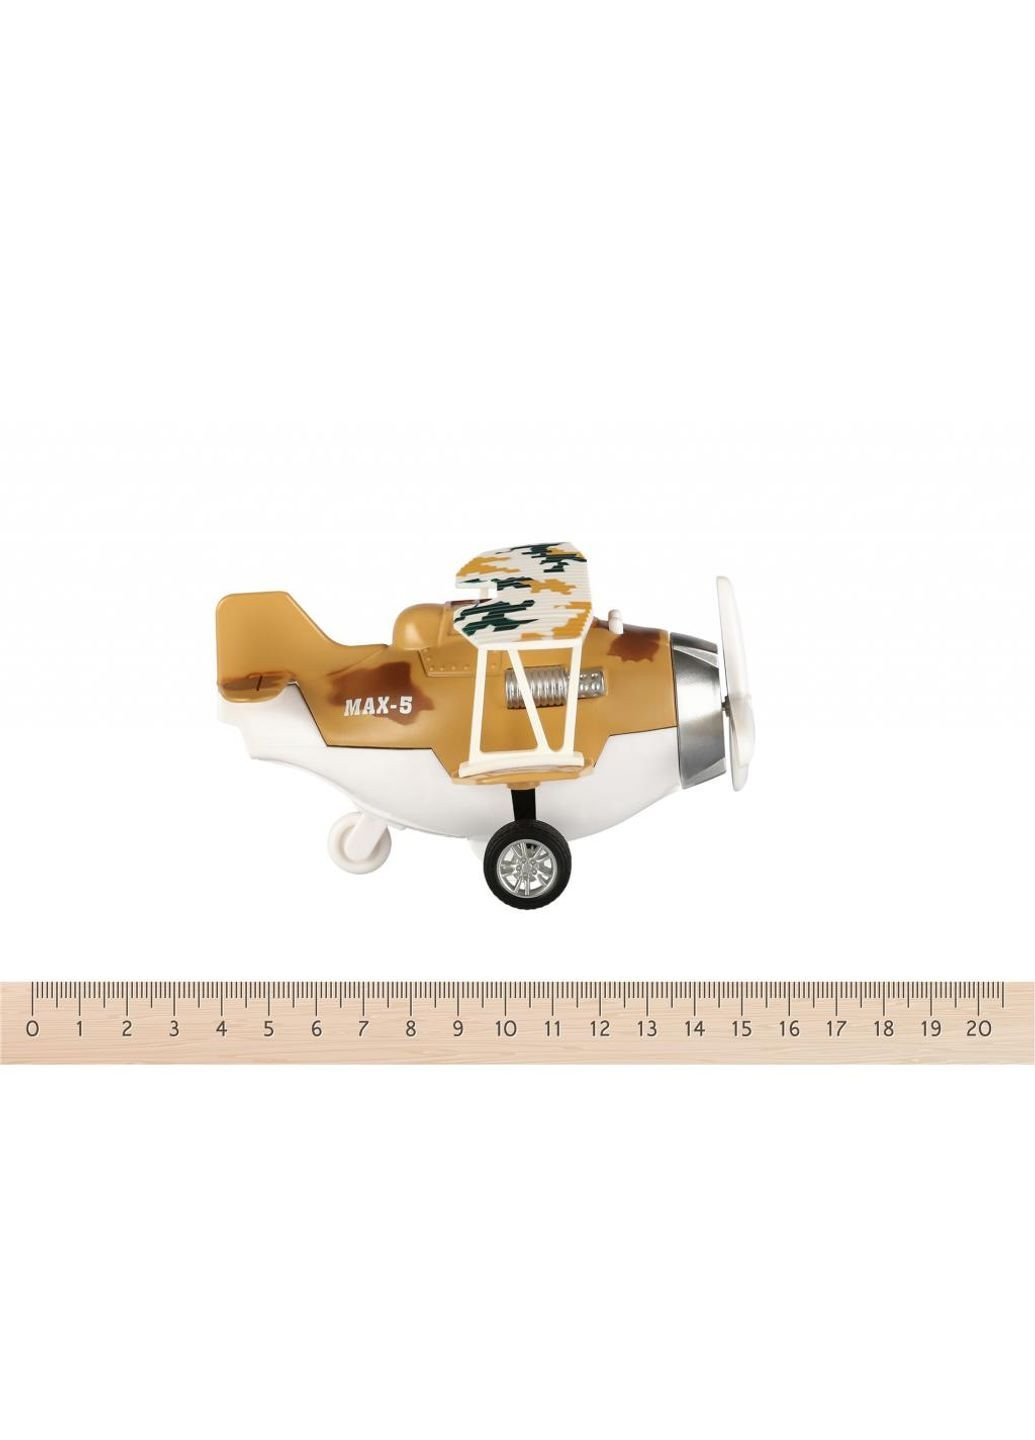 Спецтехника Самолет металический инерционный Aircraft коричневый со свет (SY8015Ut-3) Same Toy (254071320)